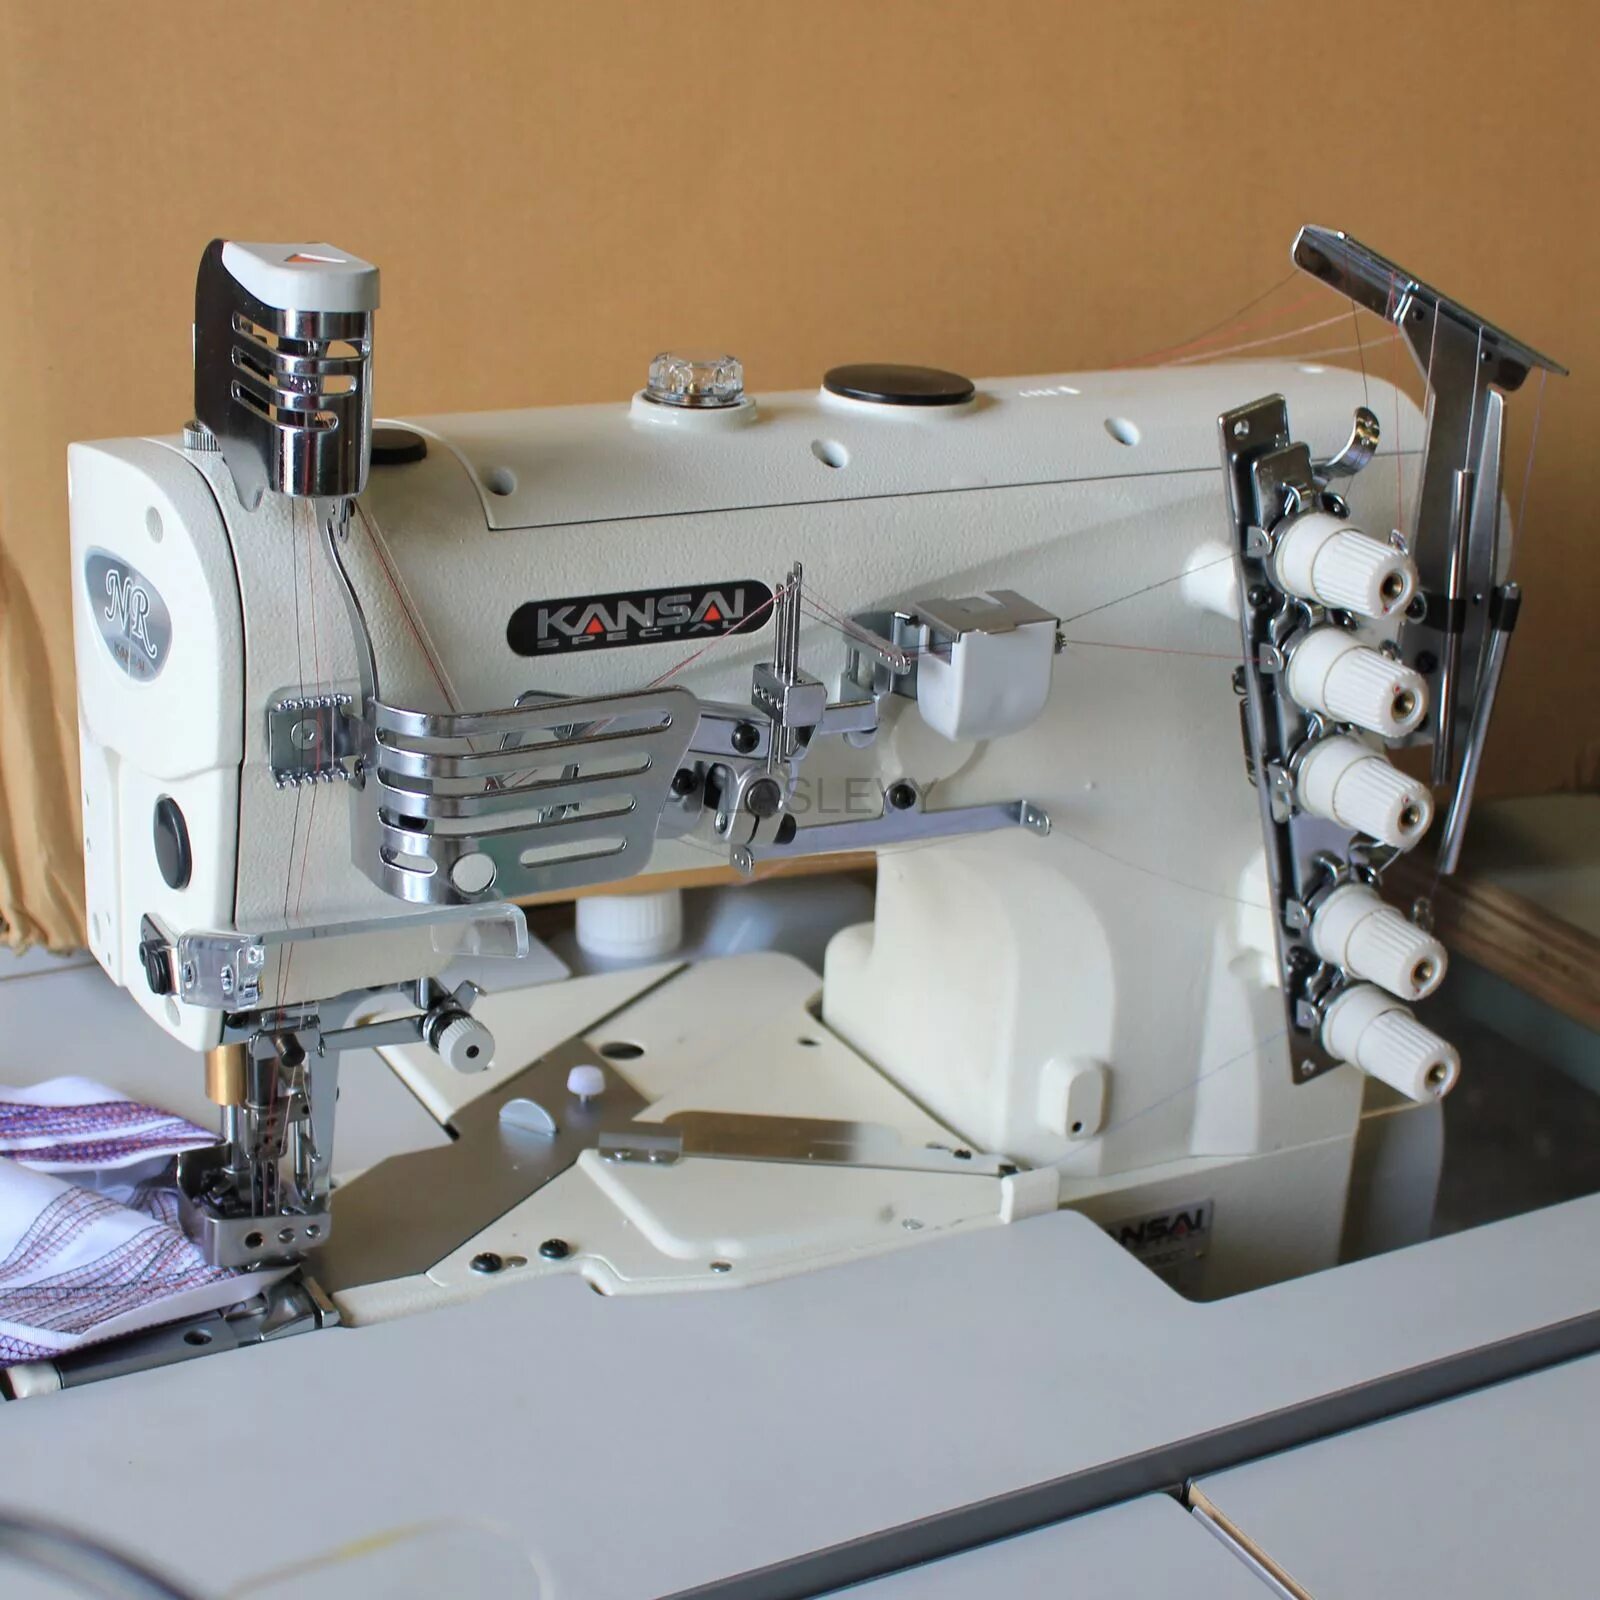 Швейные машины для производства. Плоскошовная рукавная машинка Кансай. Швейная машинка Kansai. Kansai Special Nr-9803gpmd 7/32 5.6мм. Промышленная швейная машина Jack a2s.